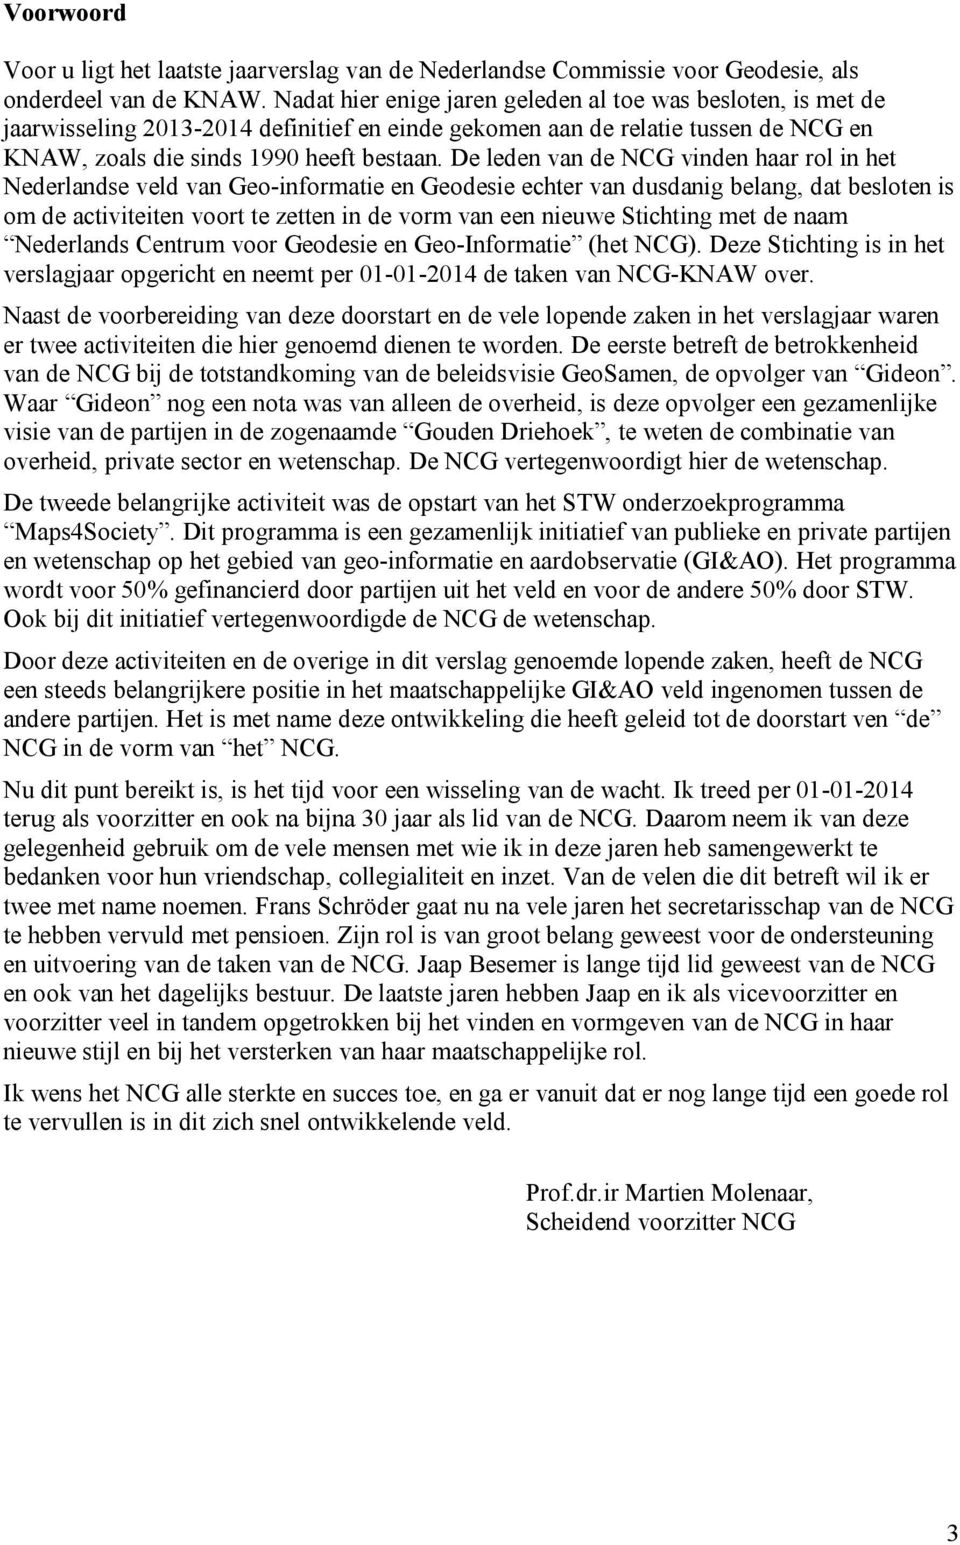 De leden van de NCG vinden haar rol in het Nederlandse veld van Geo-informatie en Geodesie echter van dusdanig belang, dat besloten is om de activiteiten voort te zetten in de vorm van een nieuwe